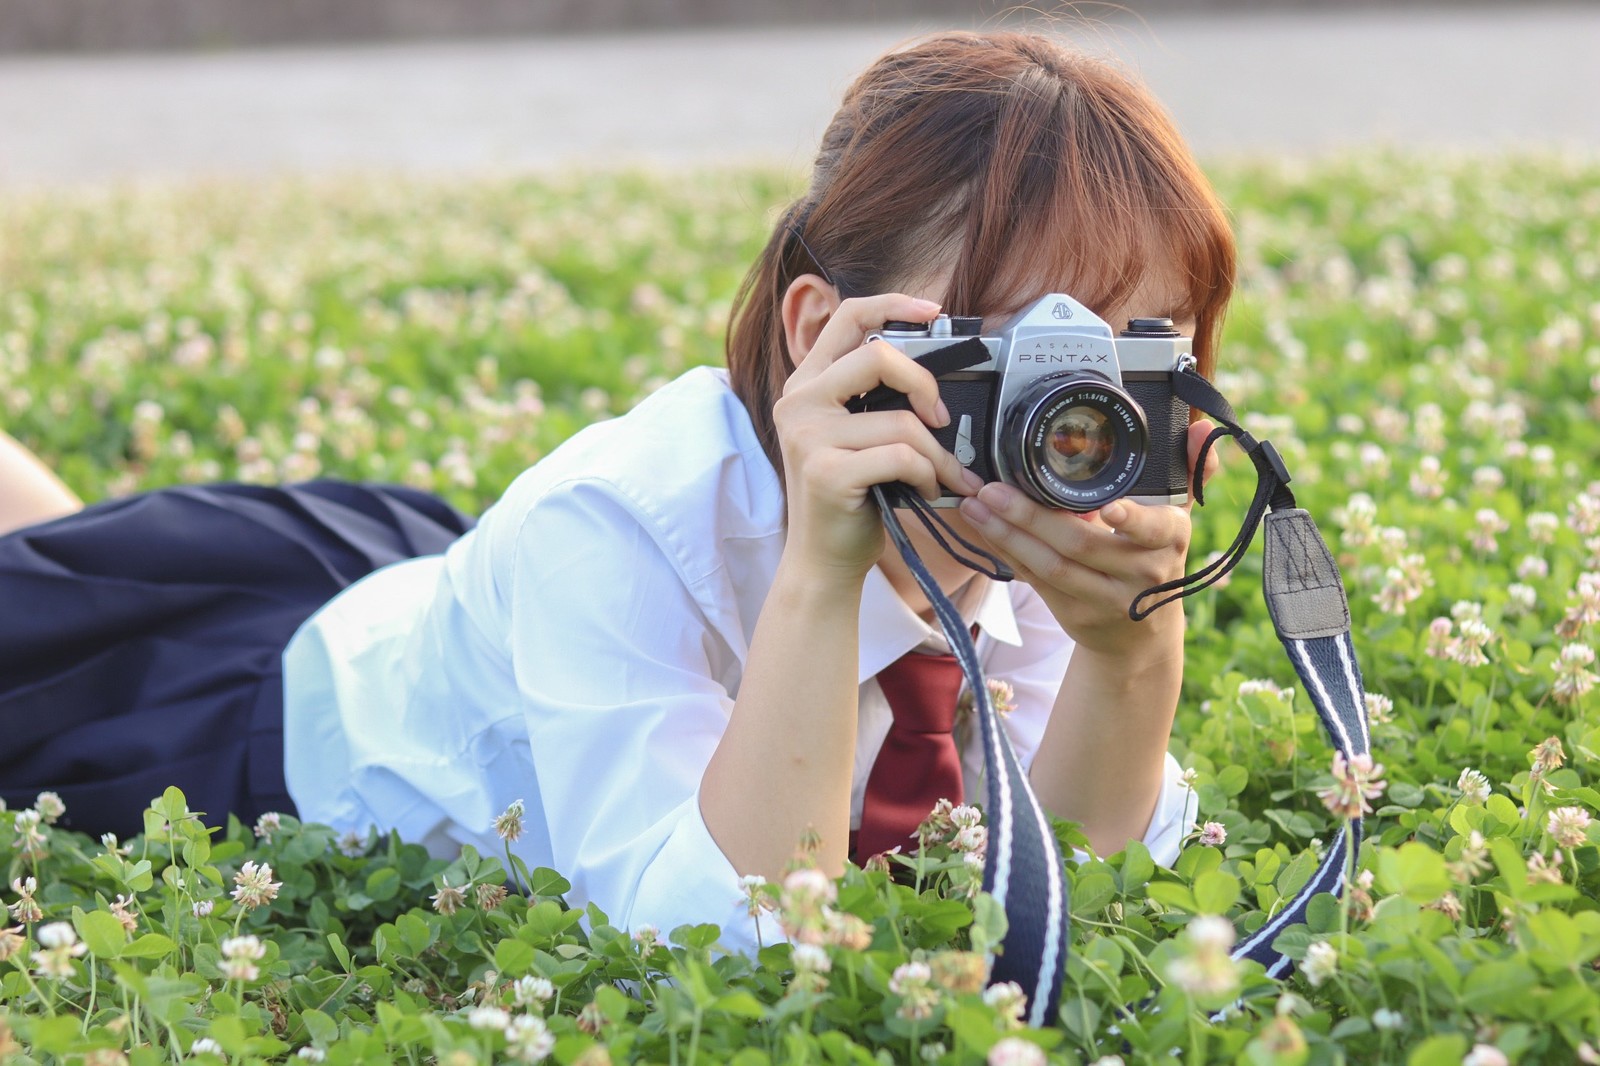 老舗カメラ雑誌 アサヒカメラが休刊 月刊カメラマンに続き今年2誌目